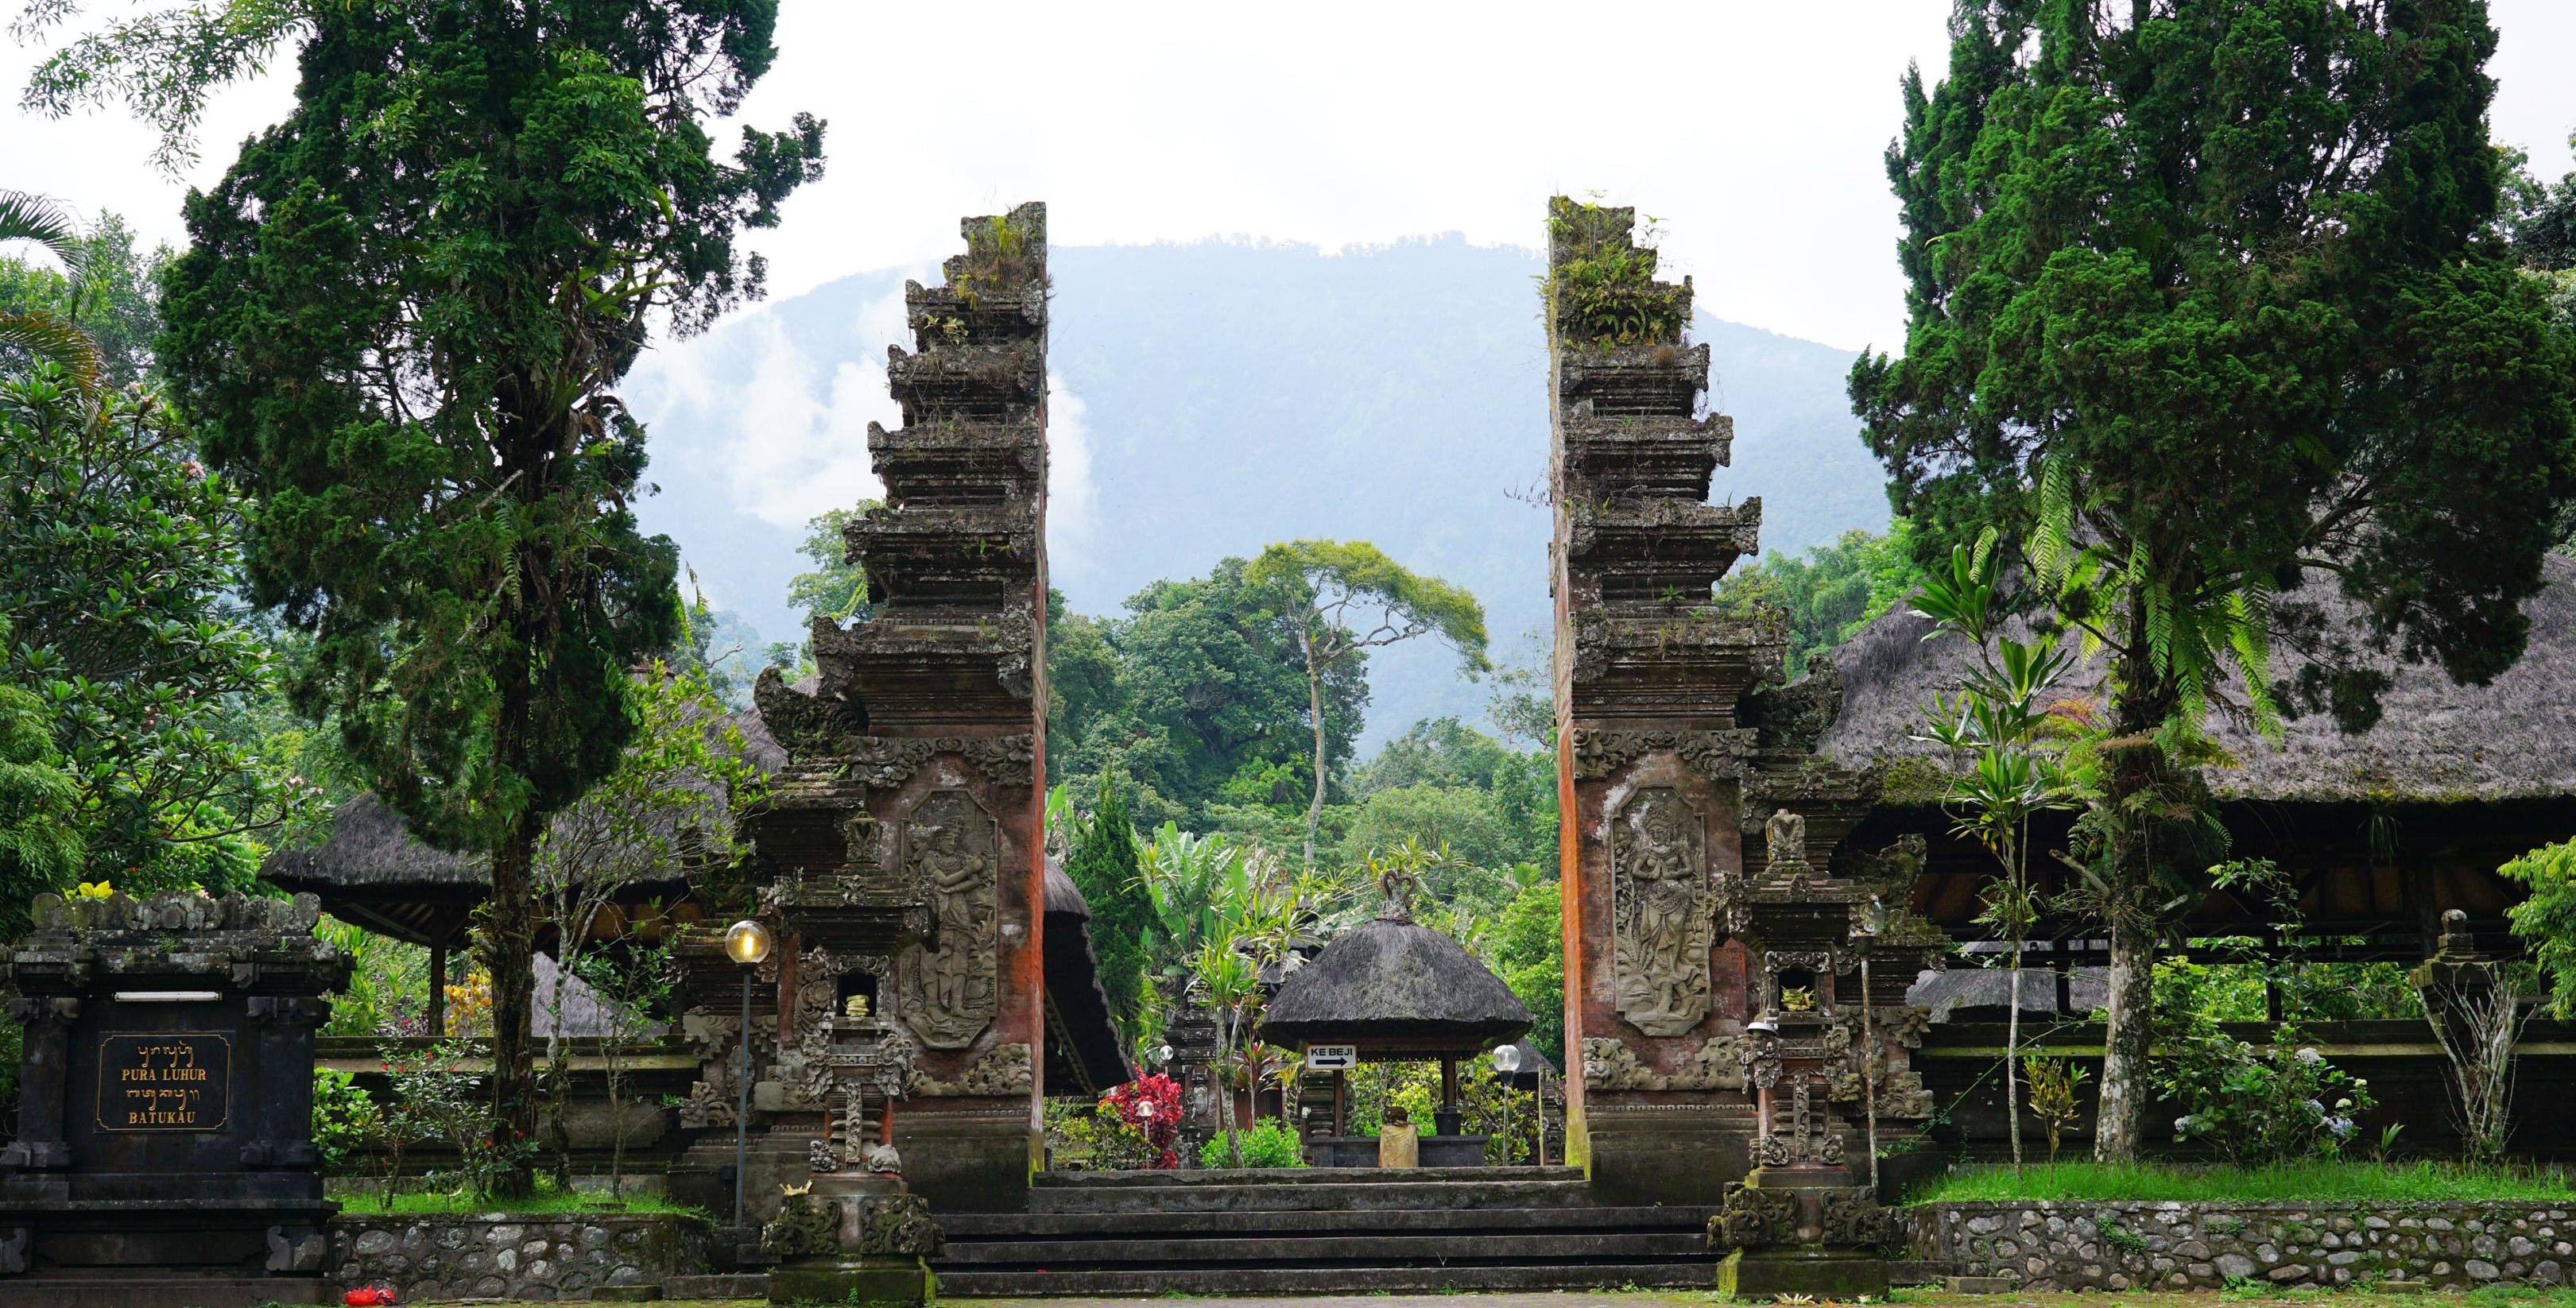 Votre voyage à Bali commence ! 